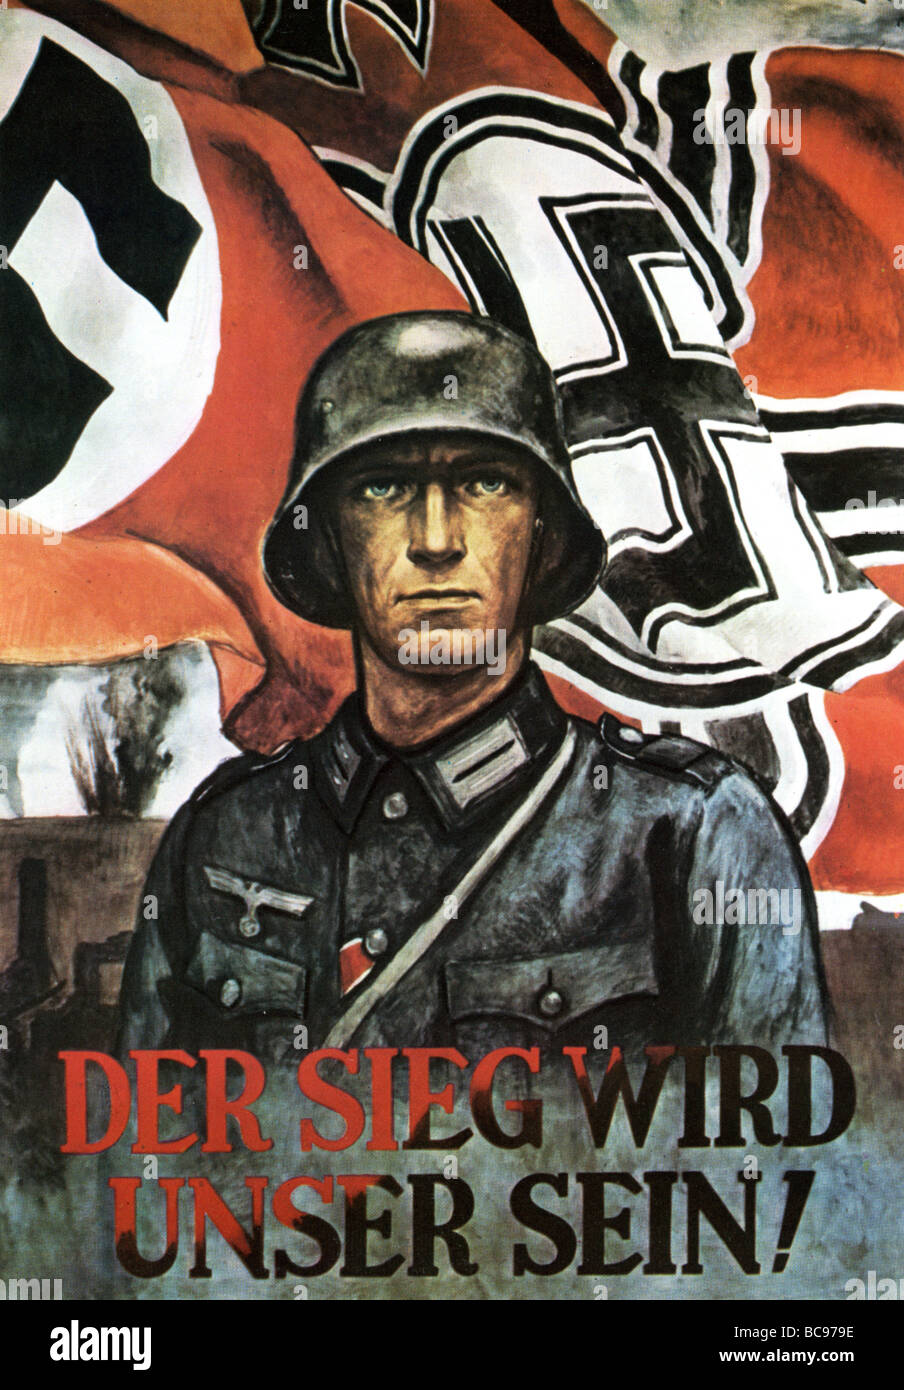 Nazi-Plakat 1942 verkündet, dass der Sieg wird unser sein Stockfoto